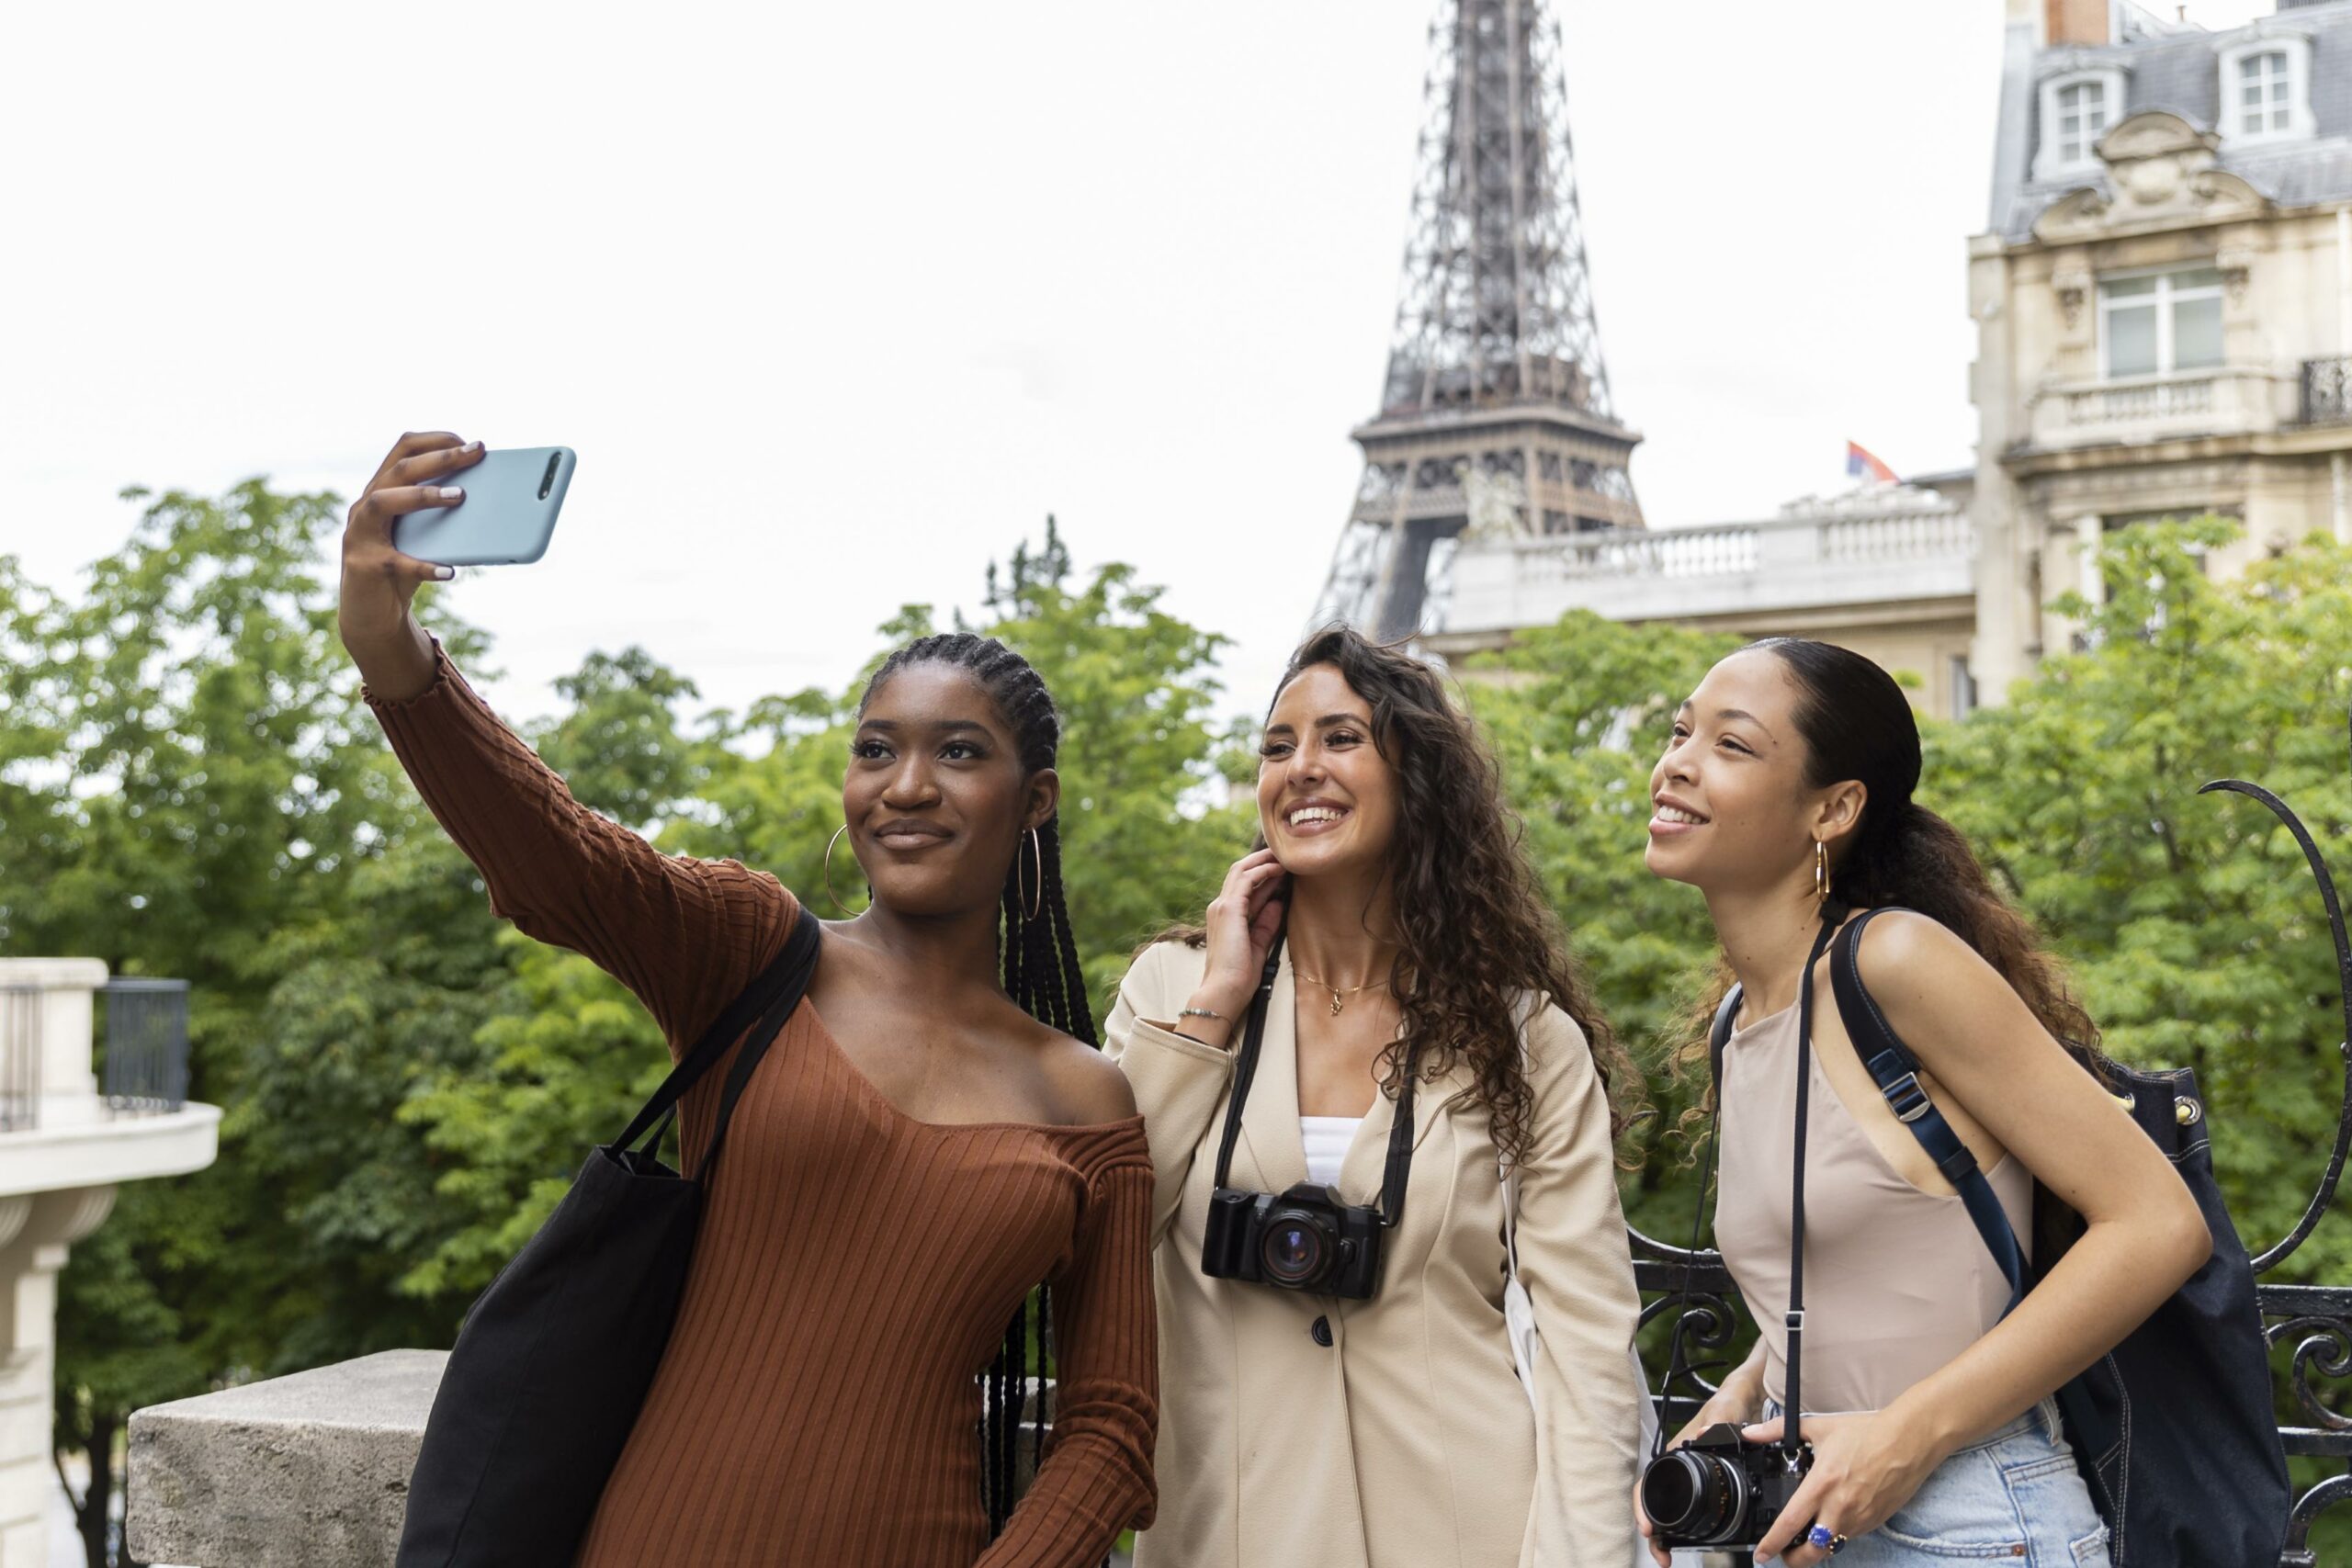 Le tourisme en France est l'un des secteurs économiques très dynamiques : il y a quelque 90 millions d'étrangers et 36 millions de Français qui voyagent en France chaque année.